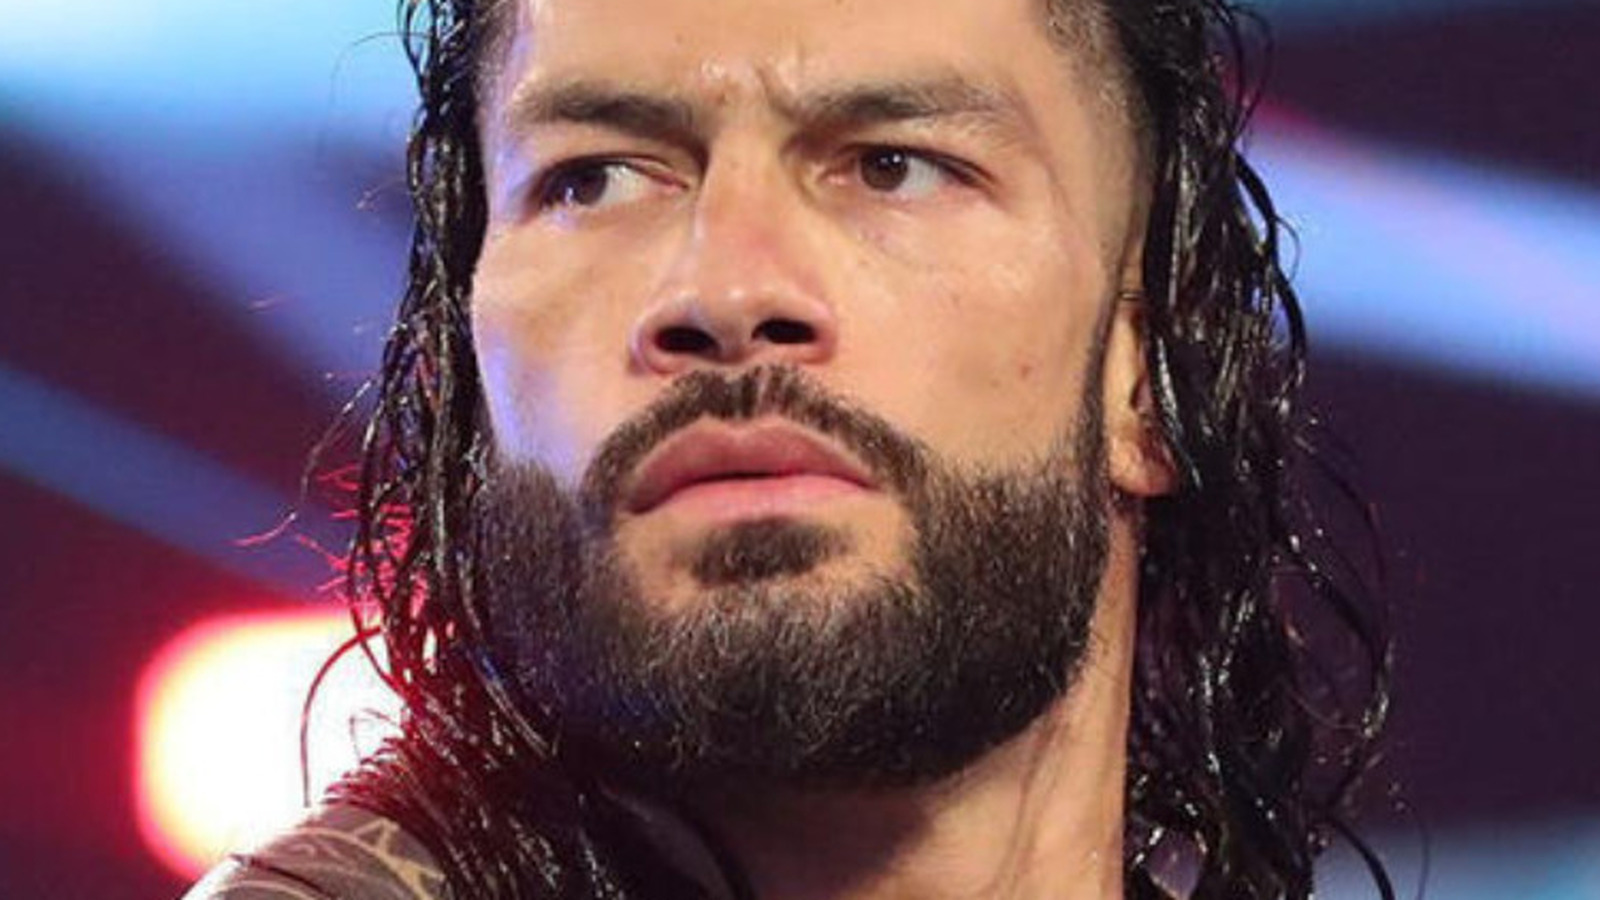 WWE veröffentlicht Aufnahmen des nie zuvor ausgestrahlten Matches von Roman Reigns